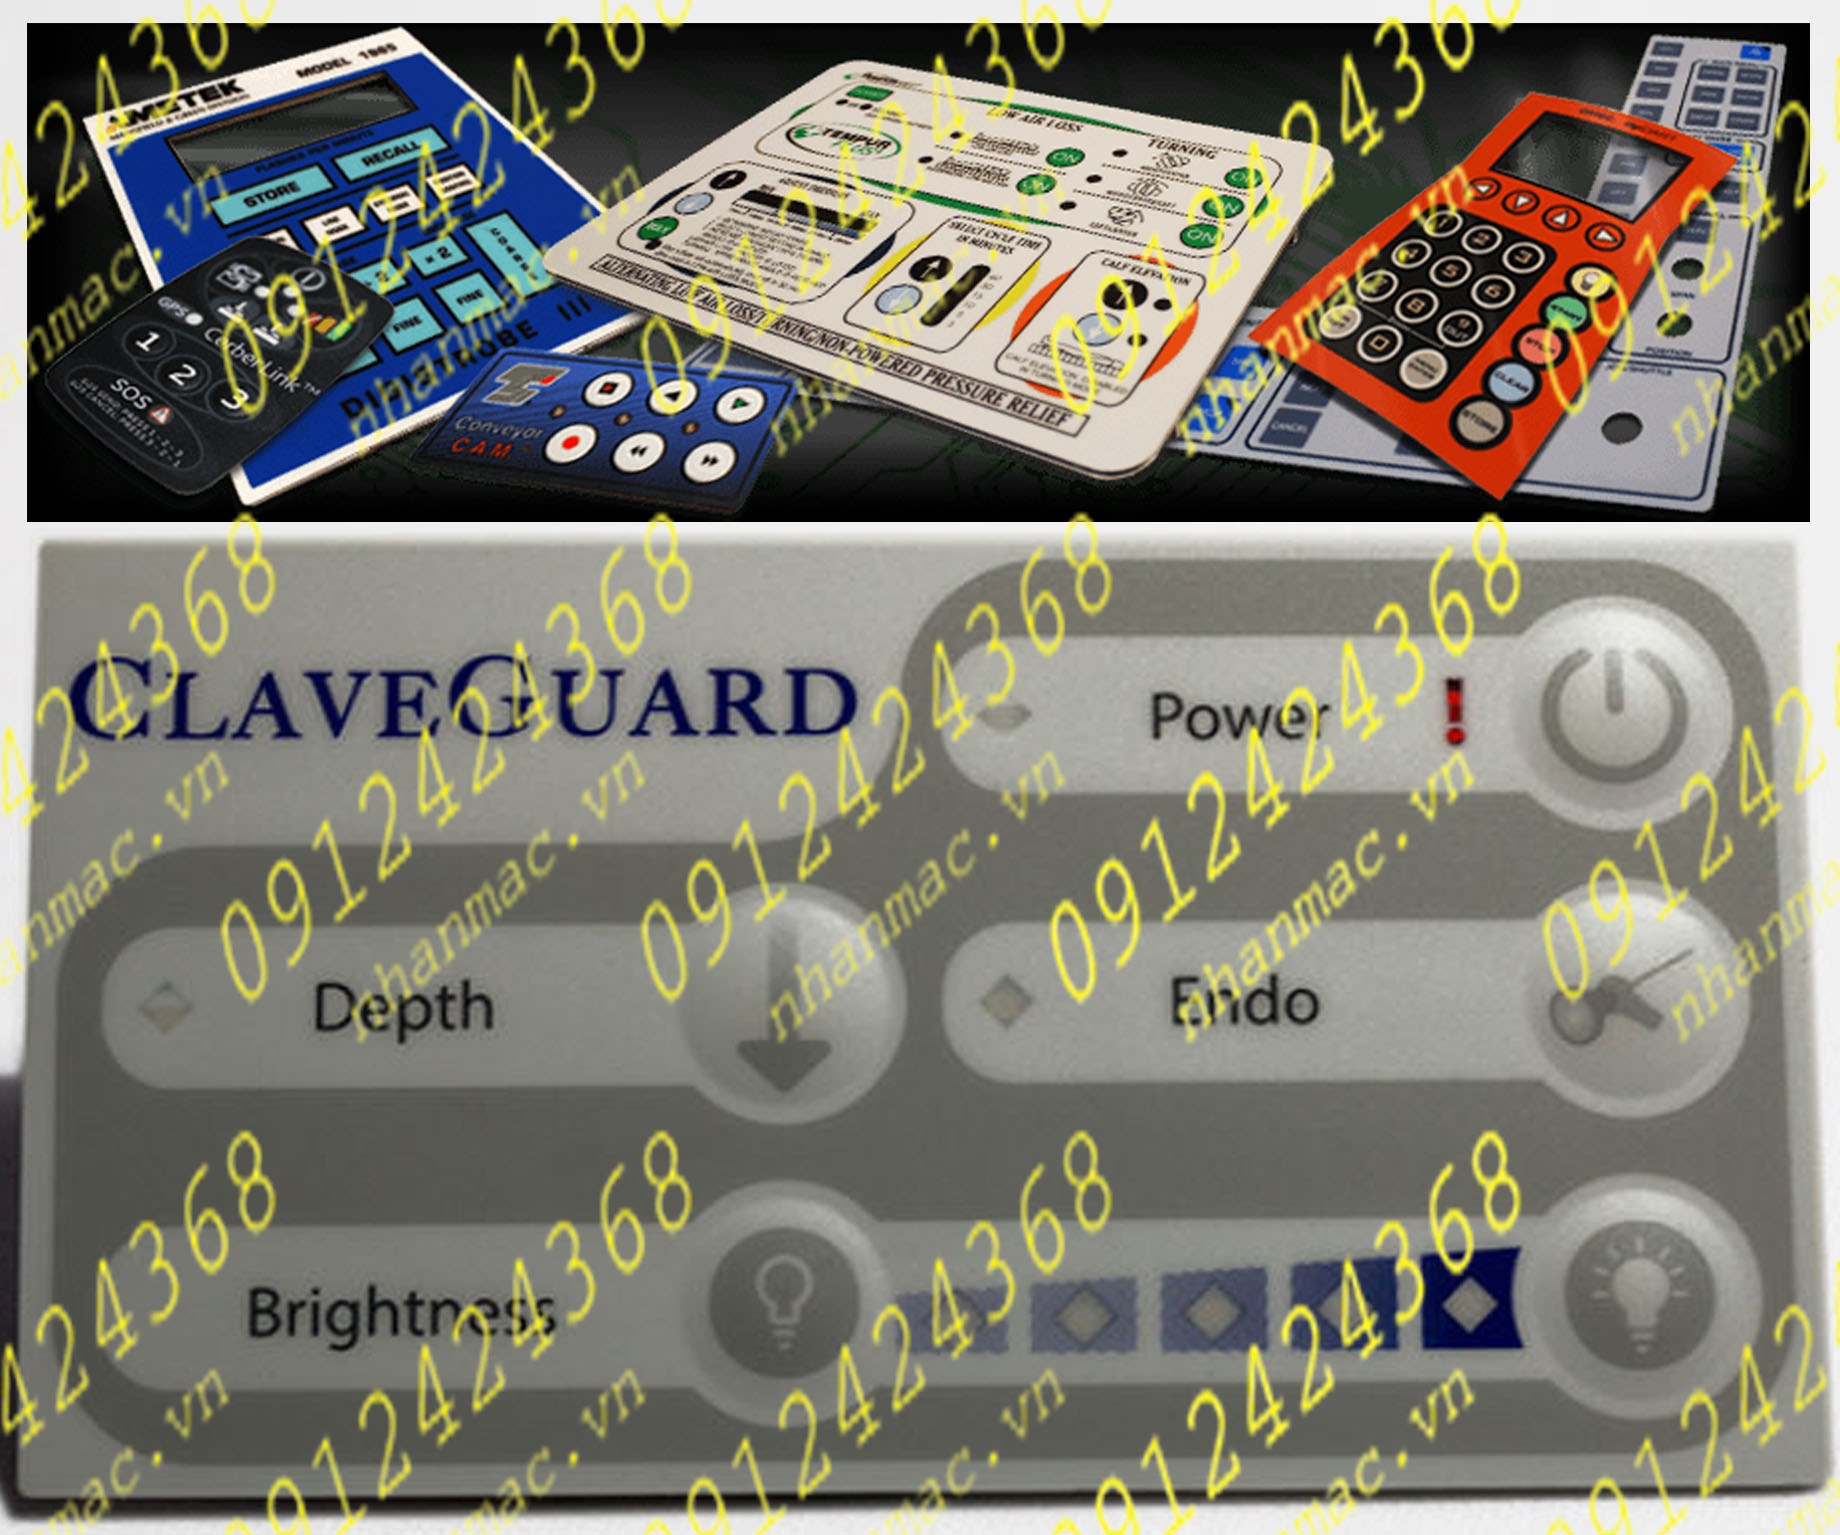 MD7- Miếng dán nhấn nút nổi làm tấm che mặt bàn phím bảng điều khiển có thể sản xuất với những đơn hàng lớn nhỏ